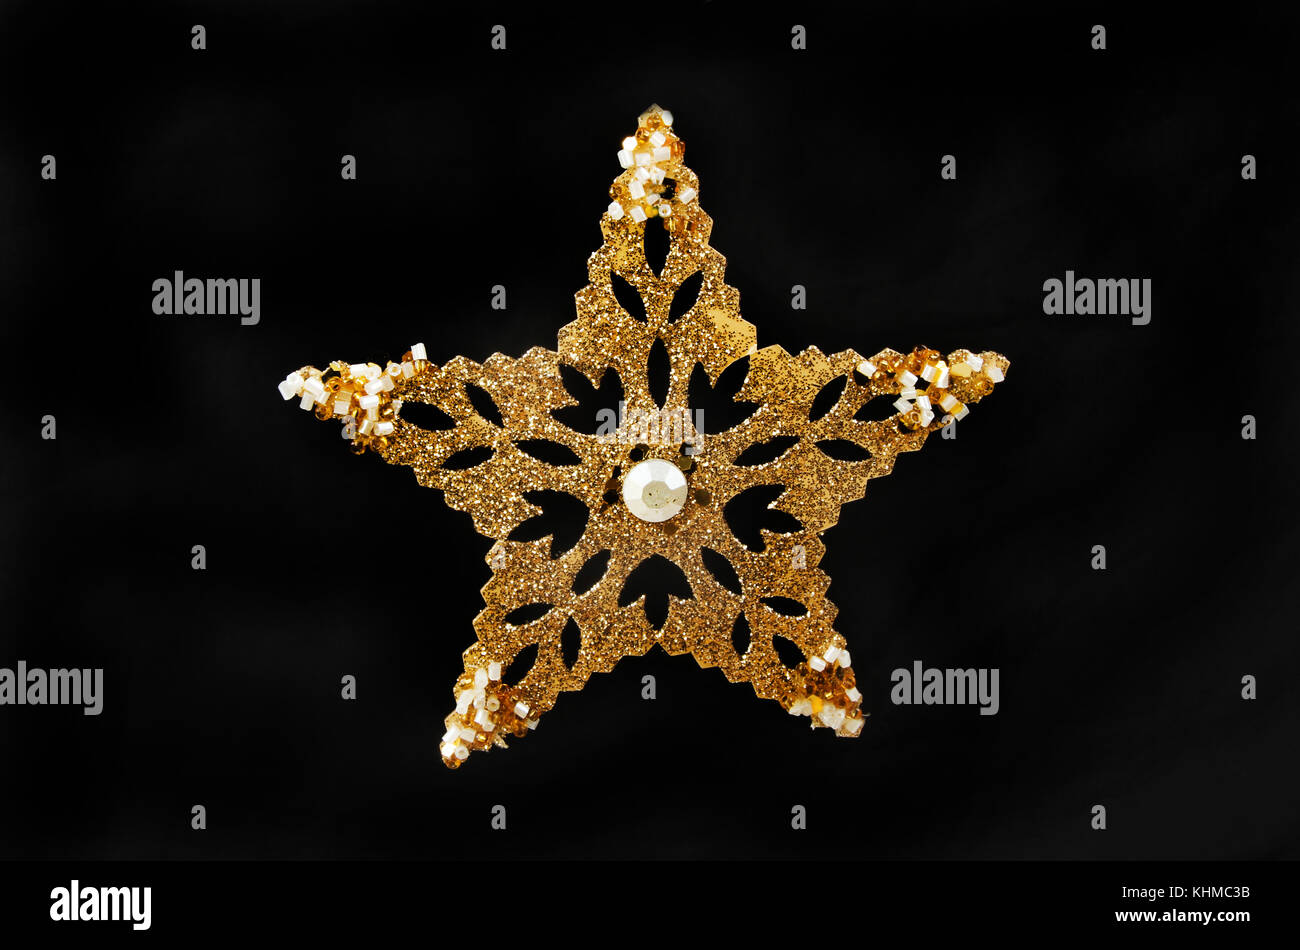 Oro glitter e jewelled star decorazione chistmas isolata contro il nero Foto Stock